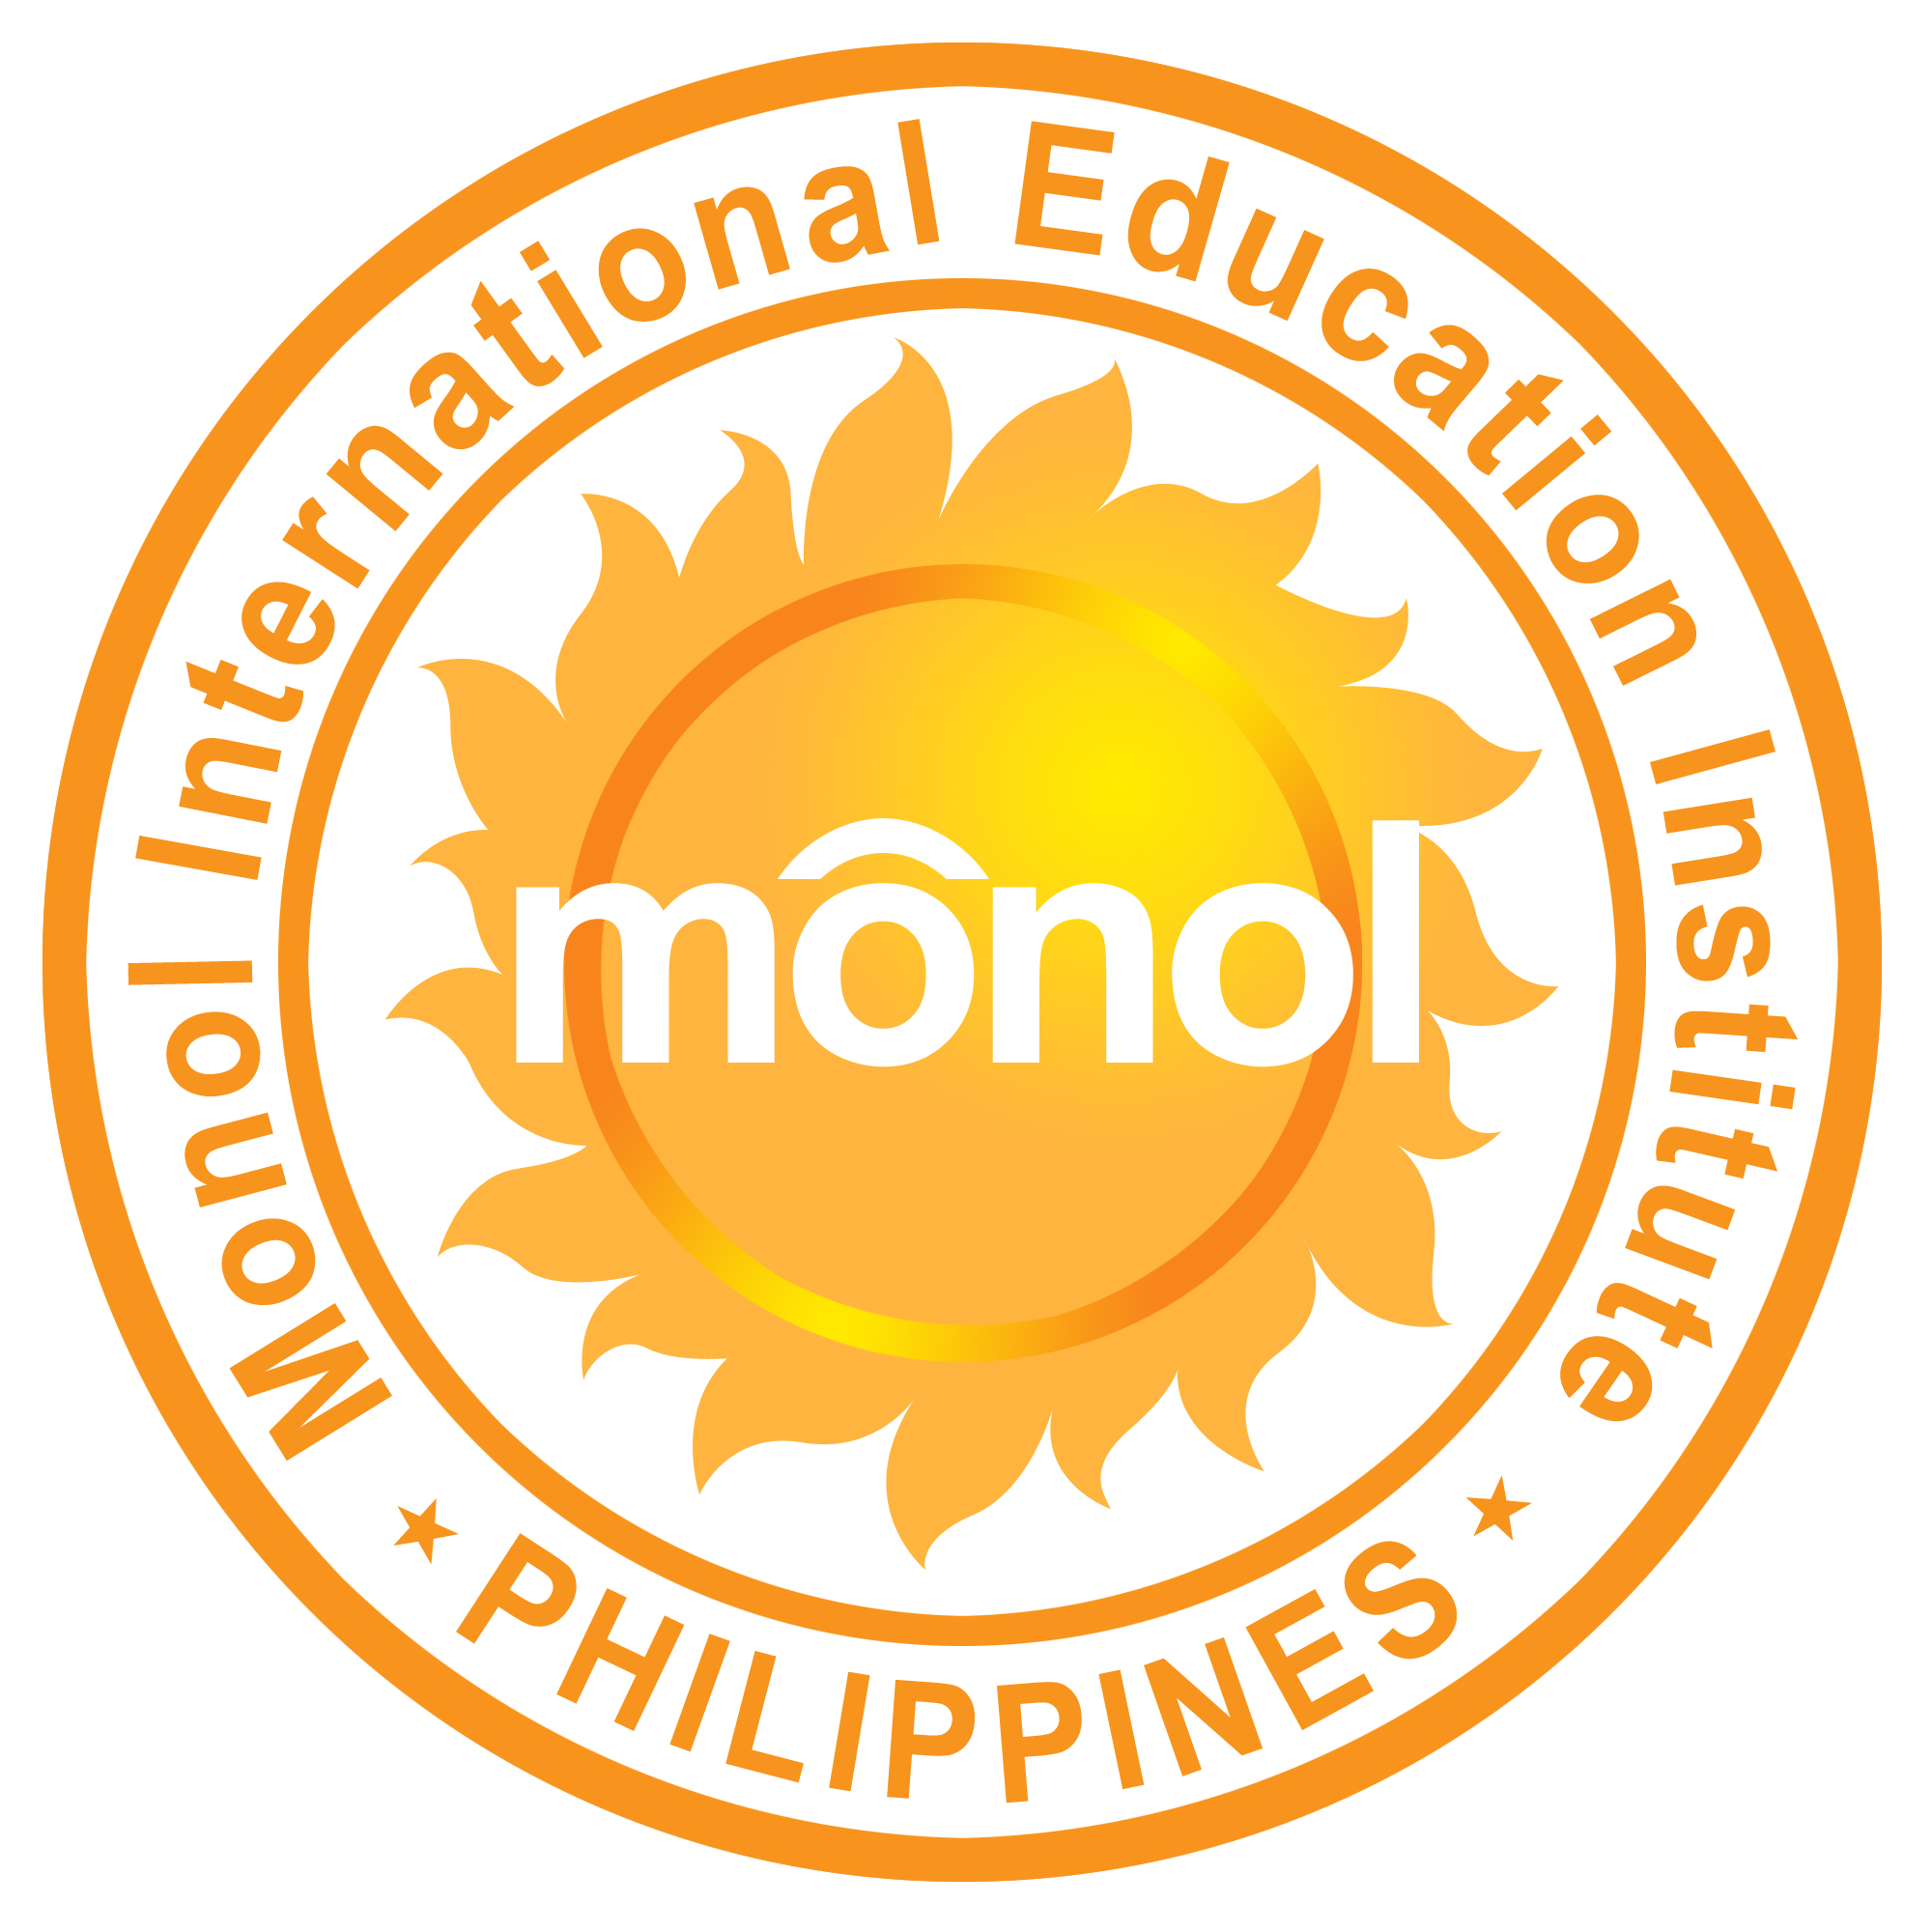 Monol International Education Institute